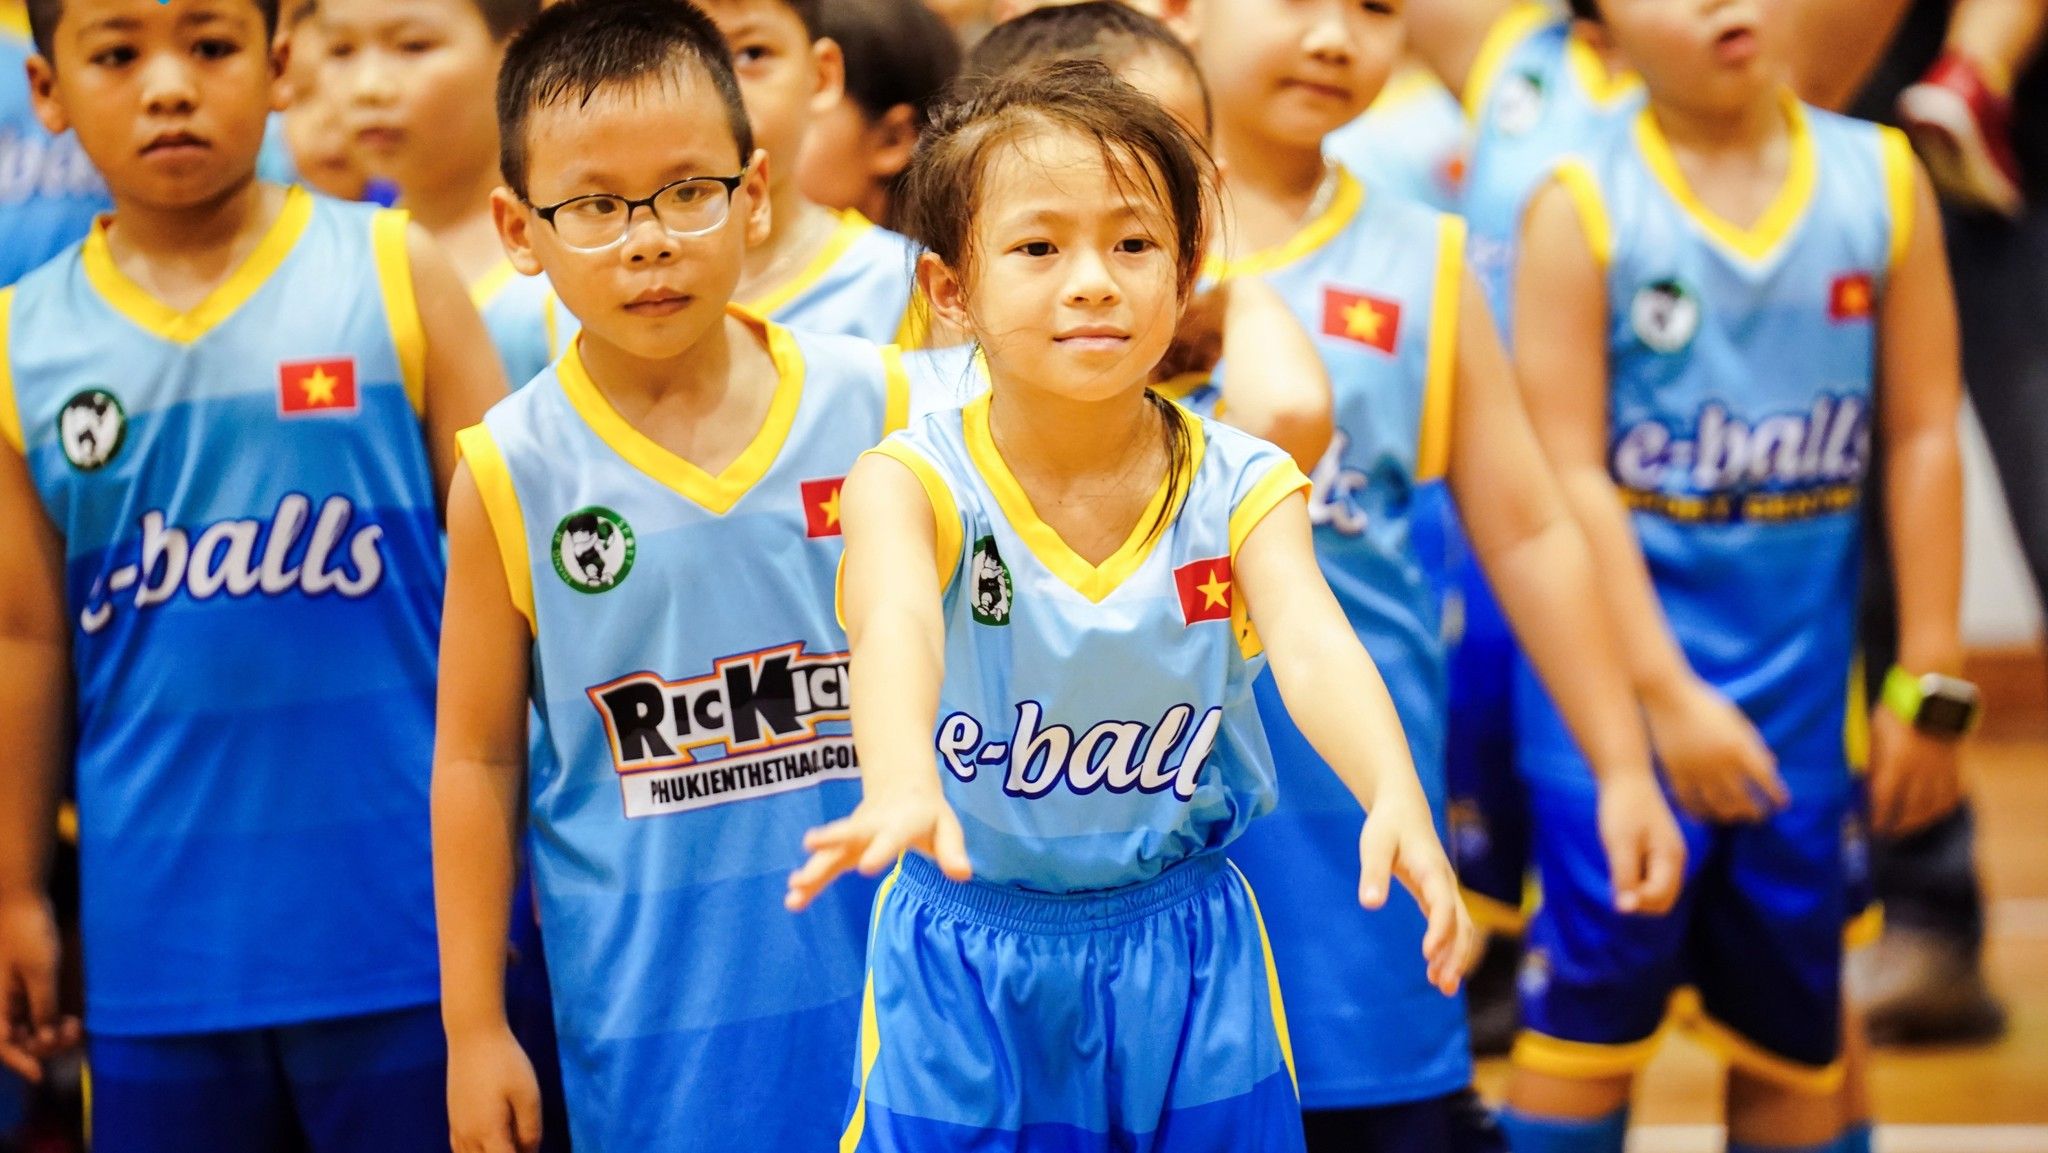 lớp học bóng rổ dành cho trẻ em tại tphcm